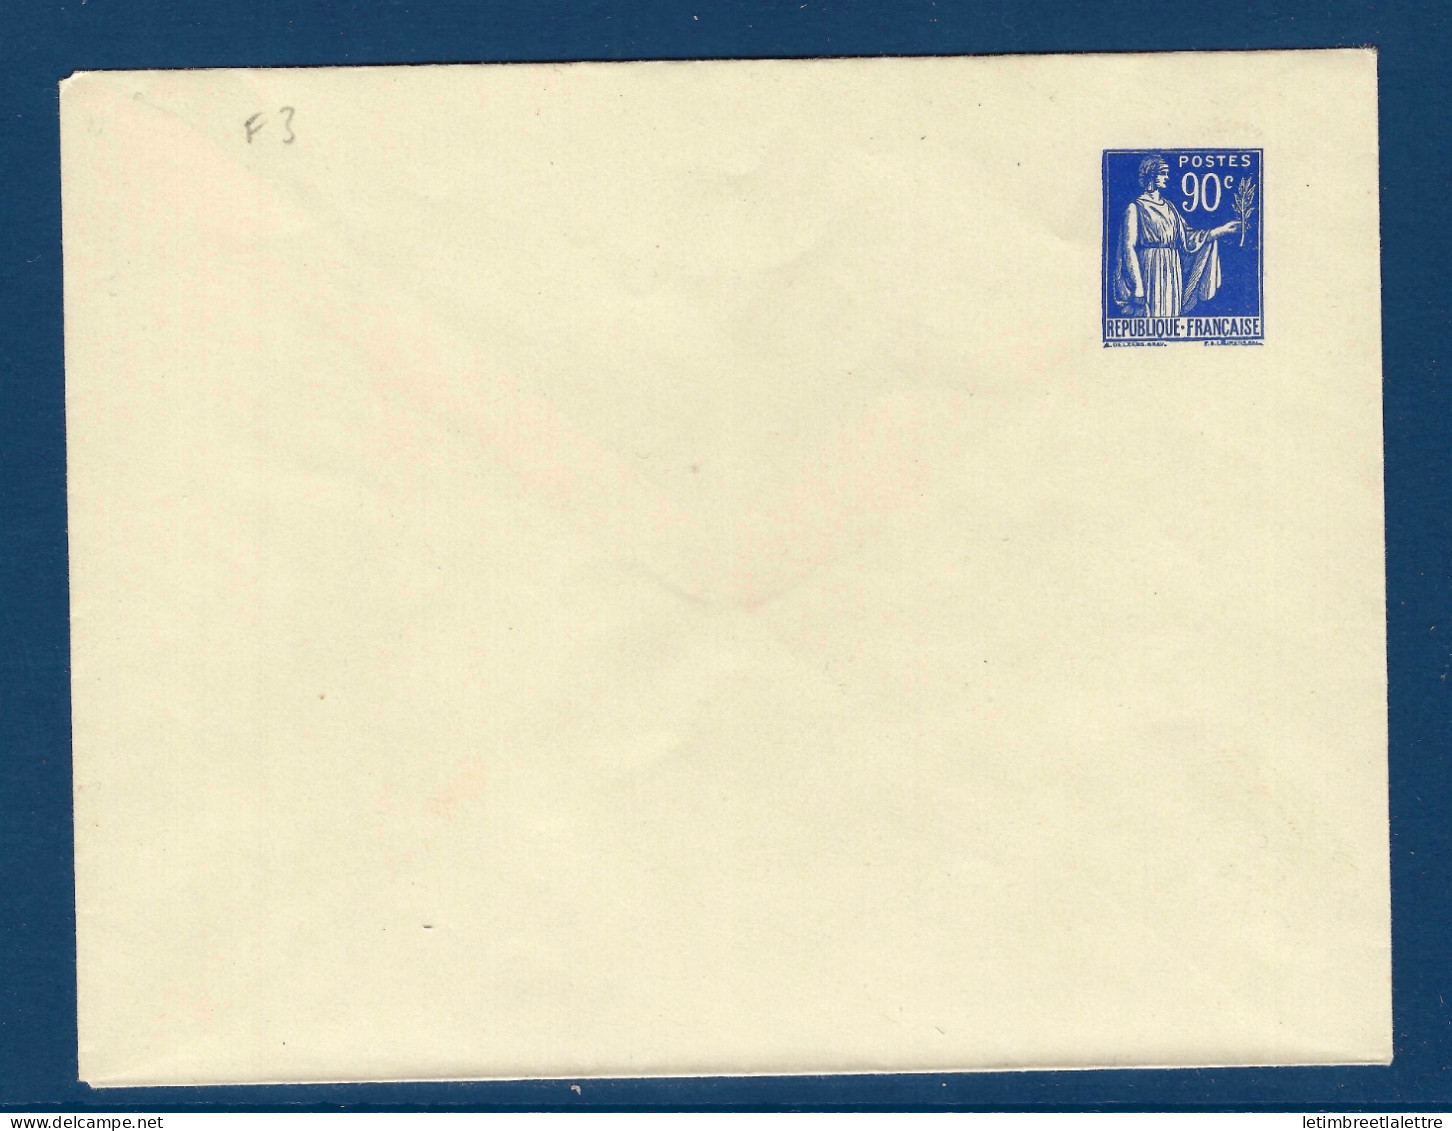 France - Entier Postal - Enveloppe F 3 - 1939 - Standard Postcards & Stamped On Demand (before 1995)